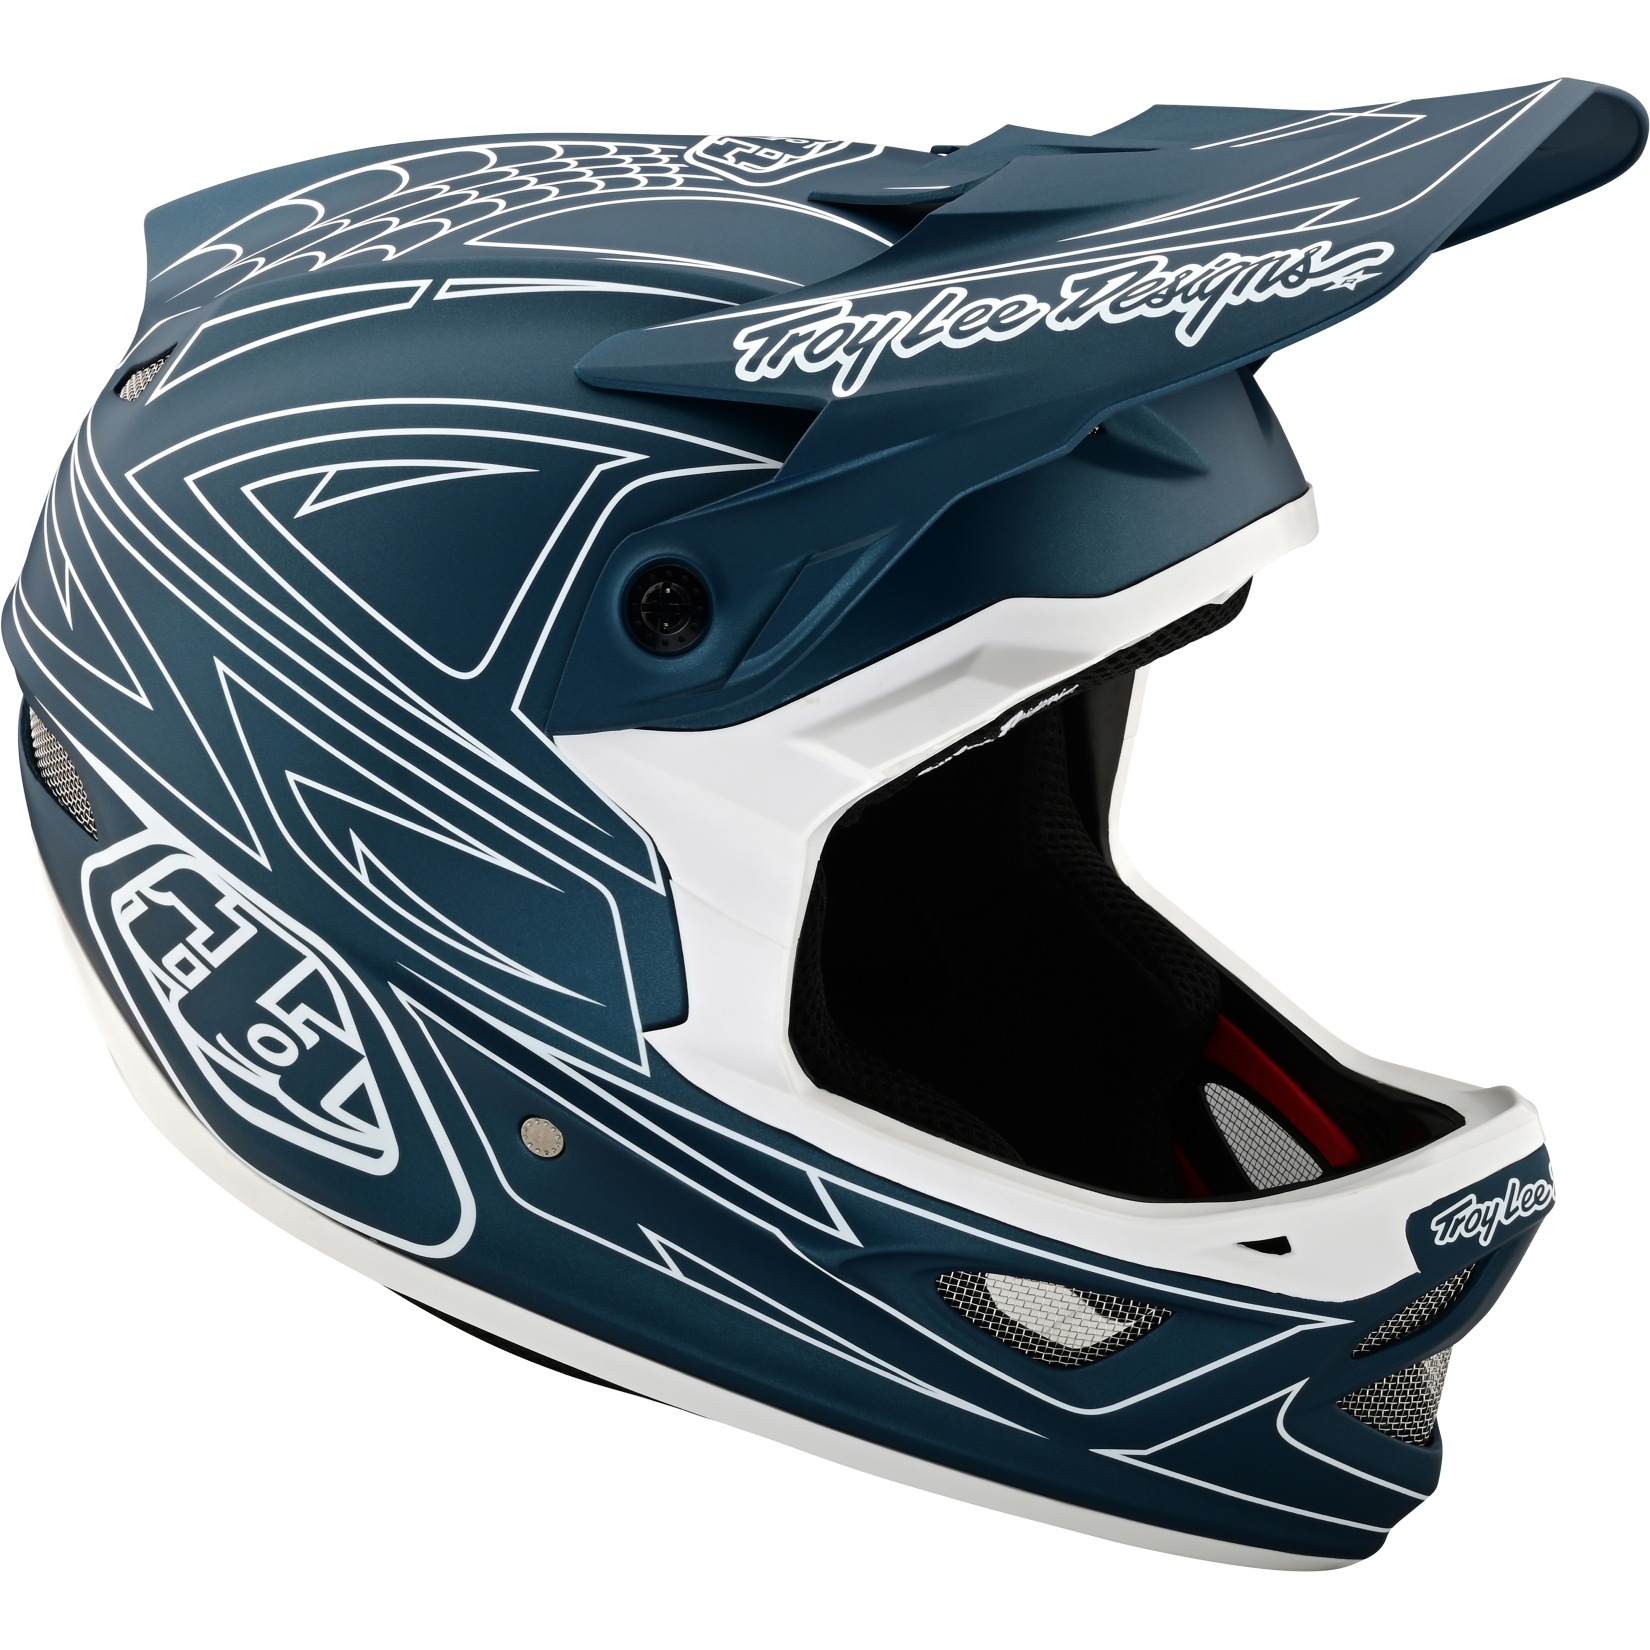 Picture of Troy Lee Designs D3 Fiberlite Helmet - spiderstripe blue